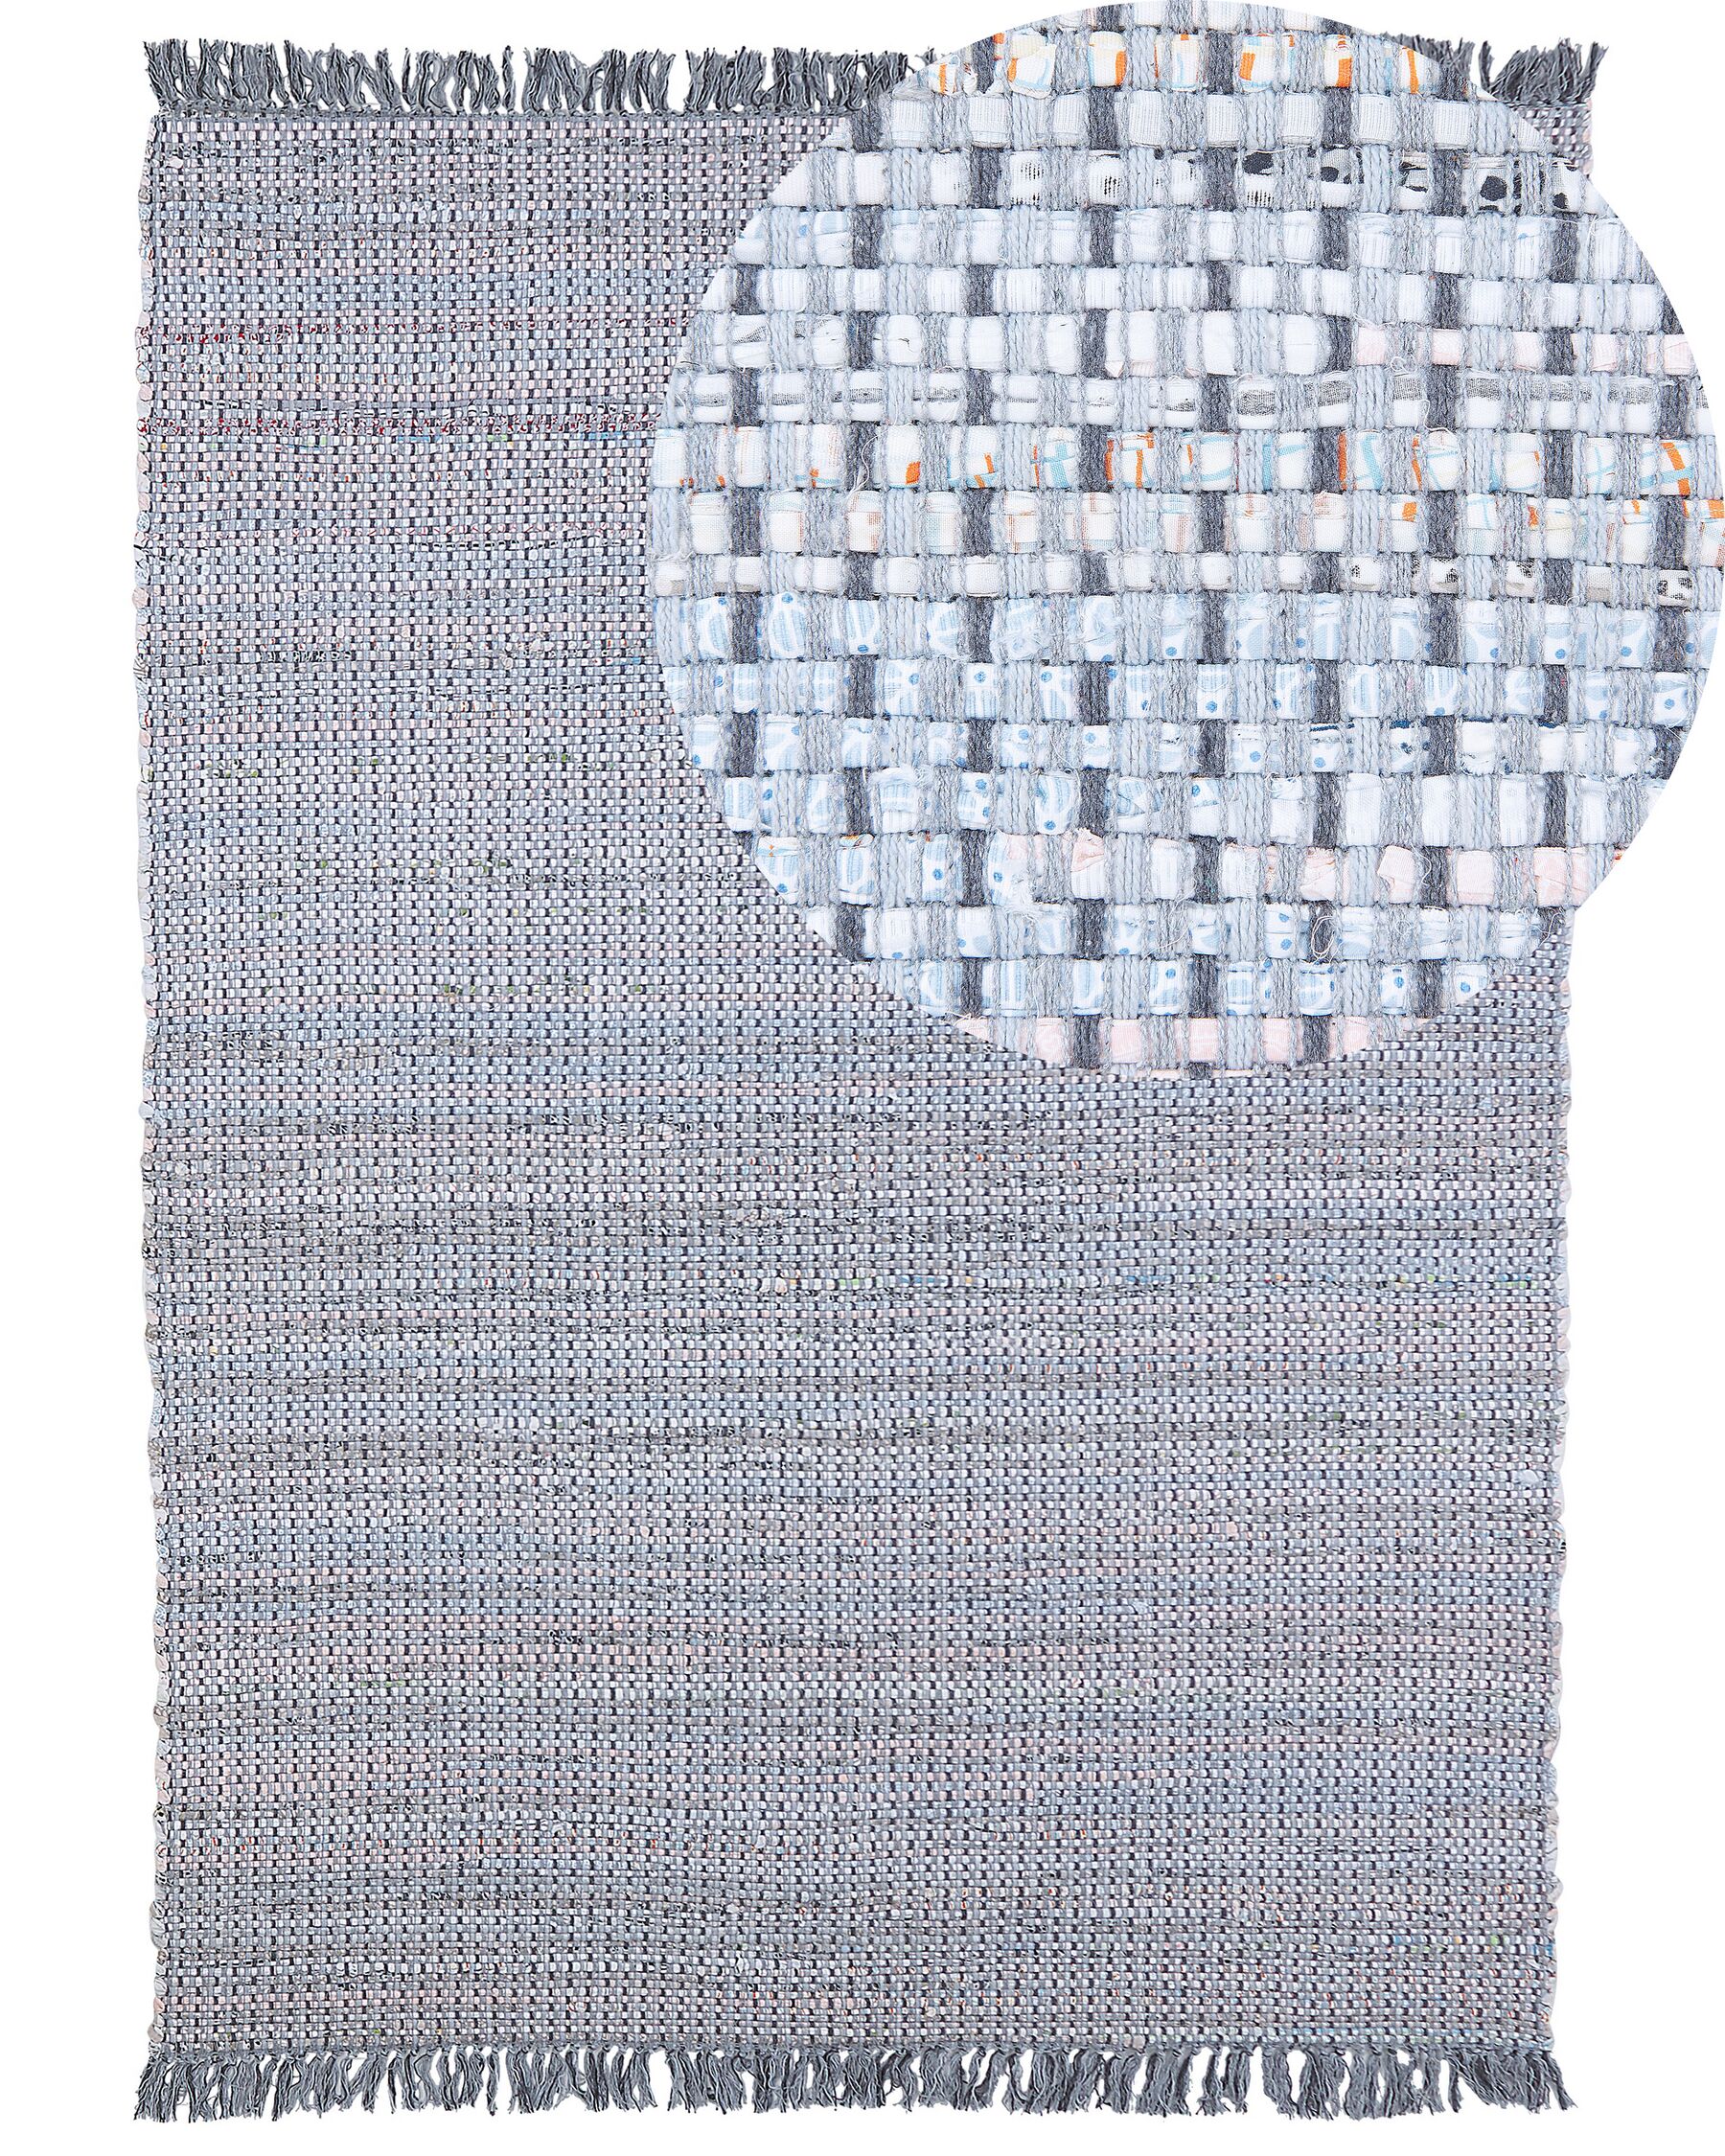 Tappeto grigio rettangolare in cotone fatto a mano - 160x230cm - BESNI_530988